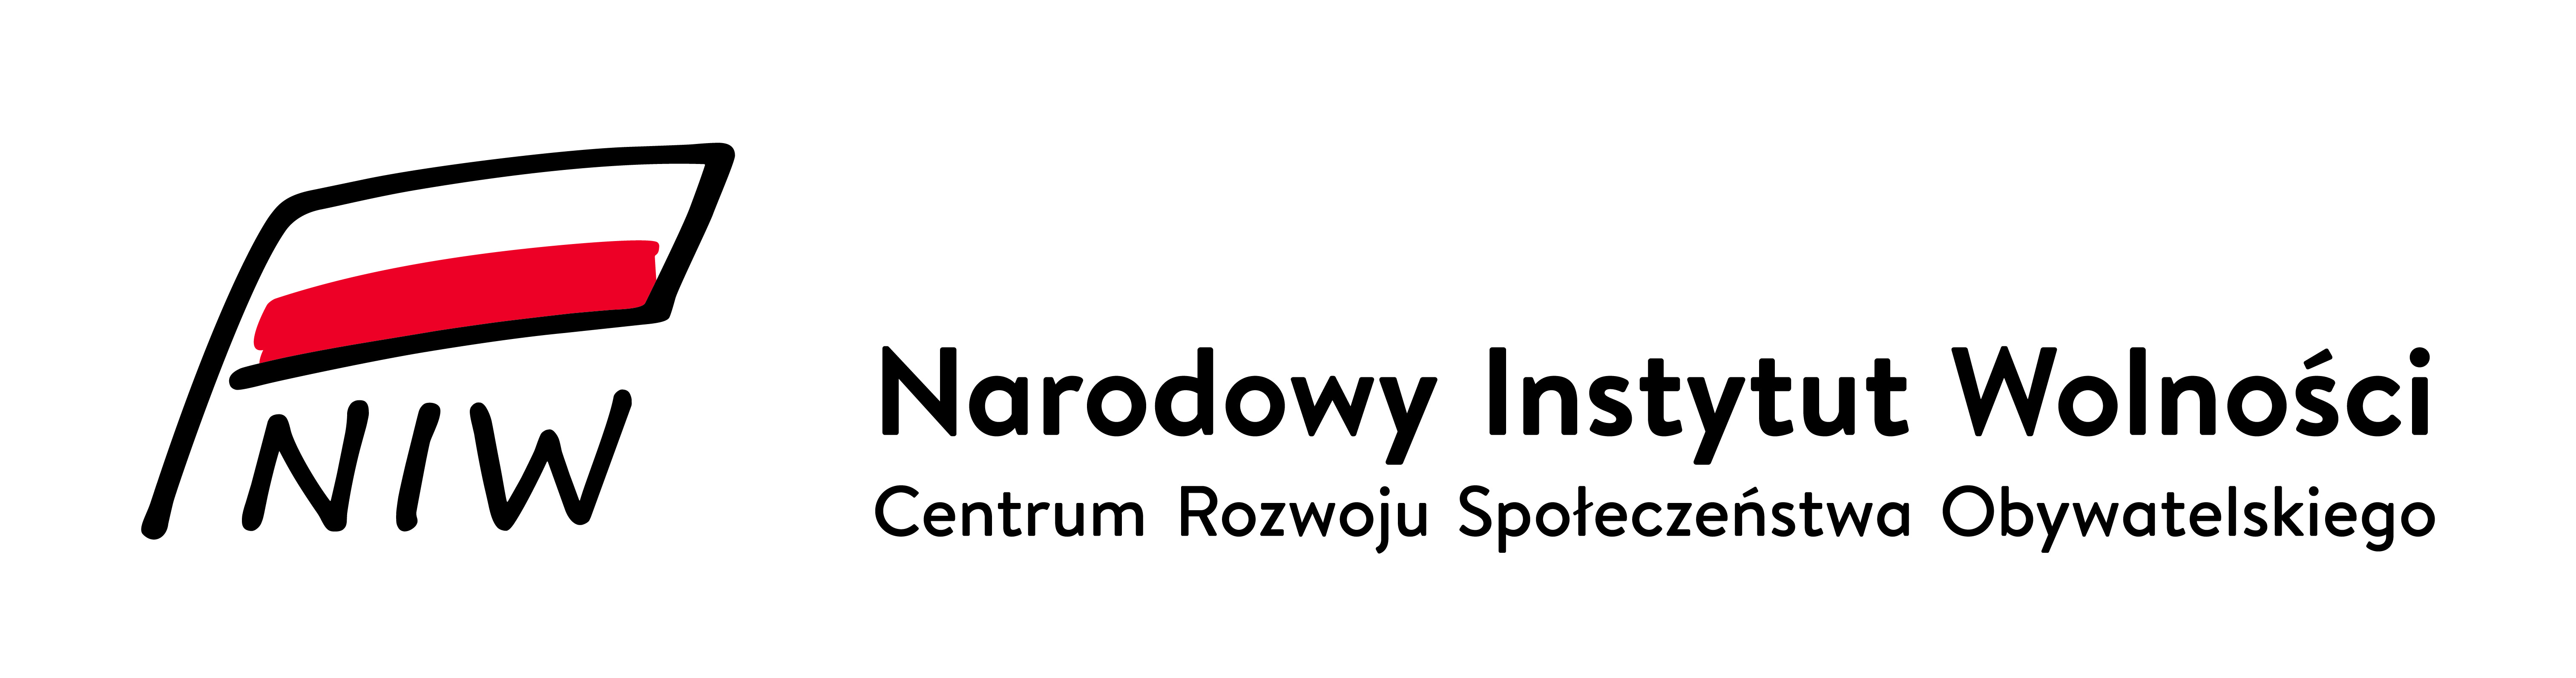 NIW - logo